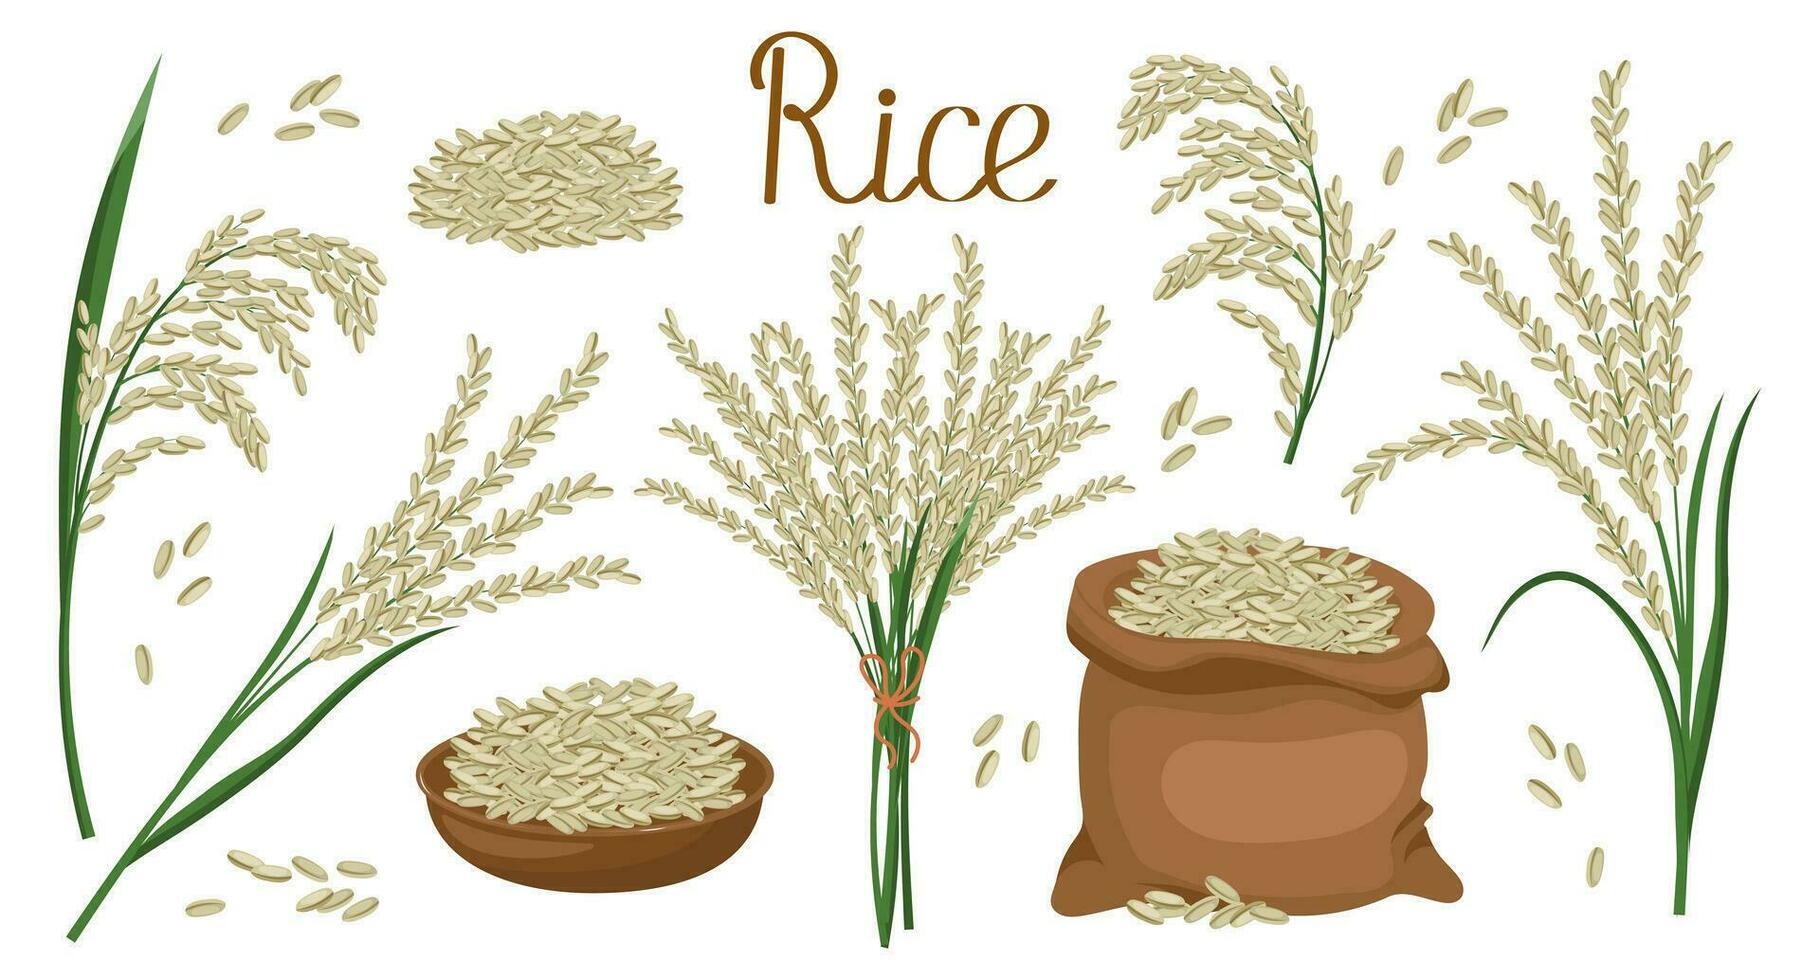 ein einstellen von Körner und Ährchen von Reis. Reis Anlage, Reis Körner im ein Teller und Tasche, Reis Strauß. Landwirtschaft Hintergrund, Design Elemente, Vektor